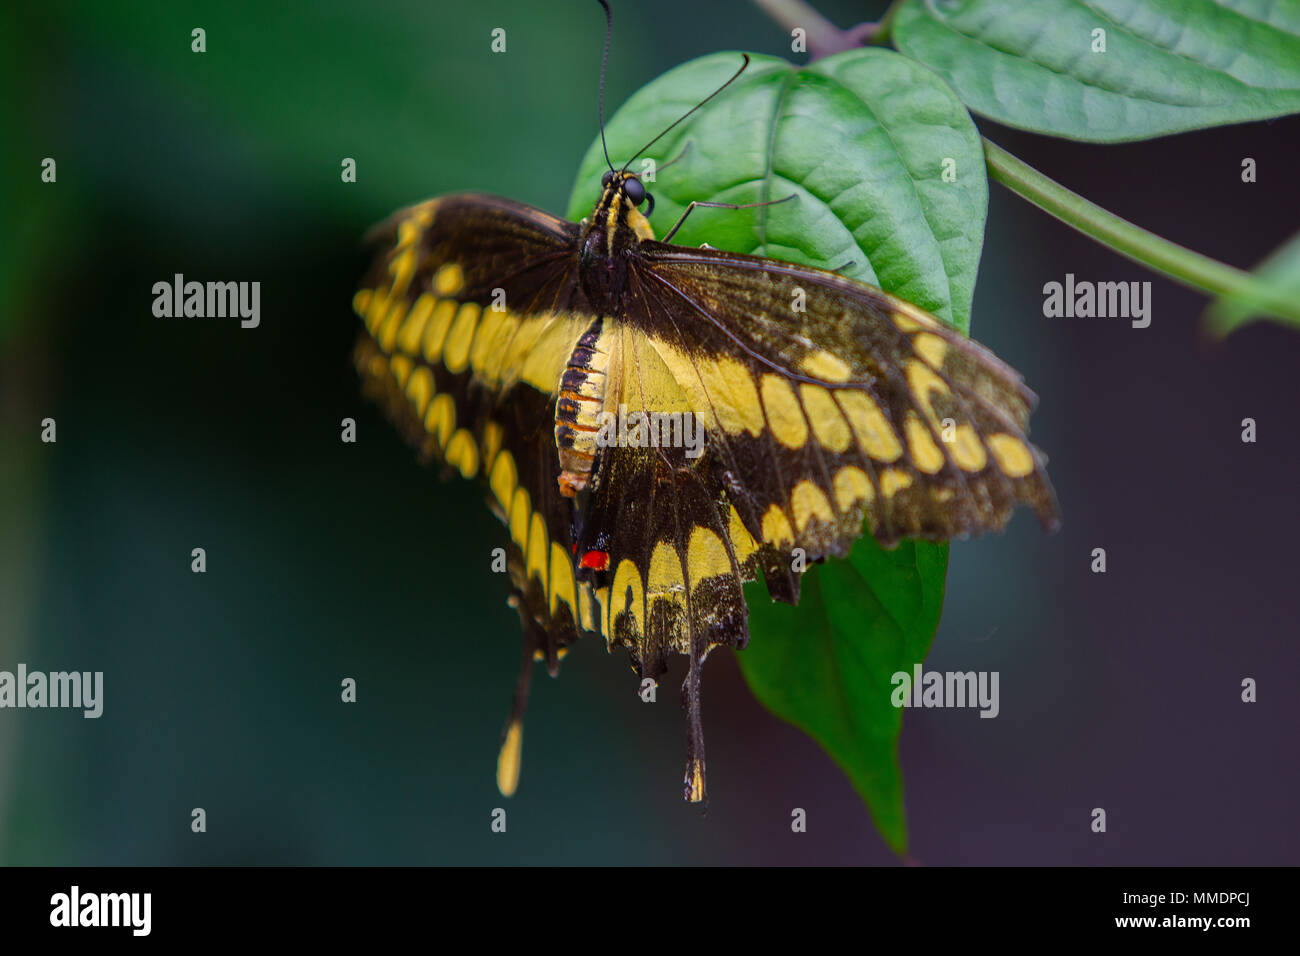 Una hermosa mariposa negra y amarilla descansando sobre una hoja verde Foto de stock